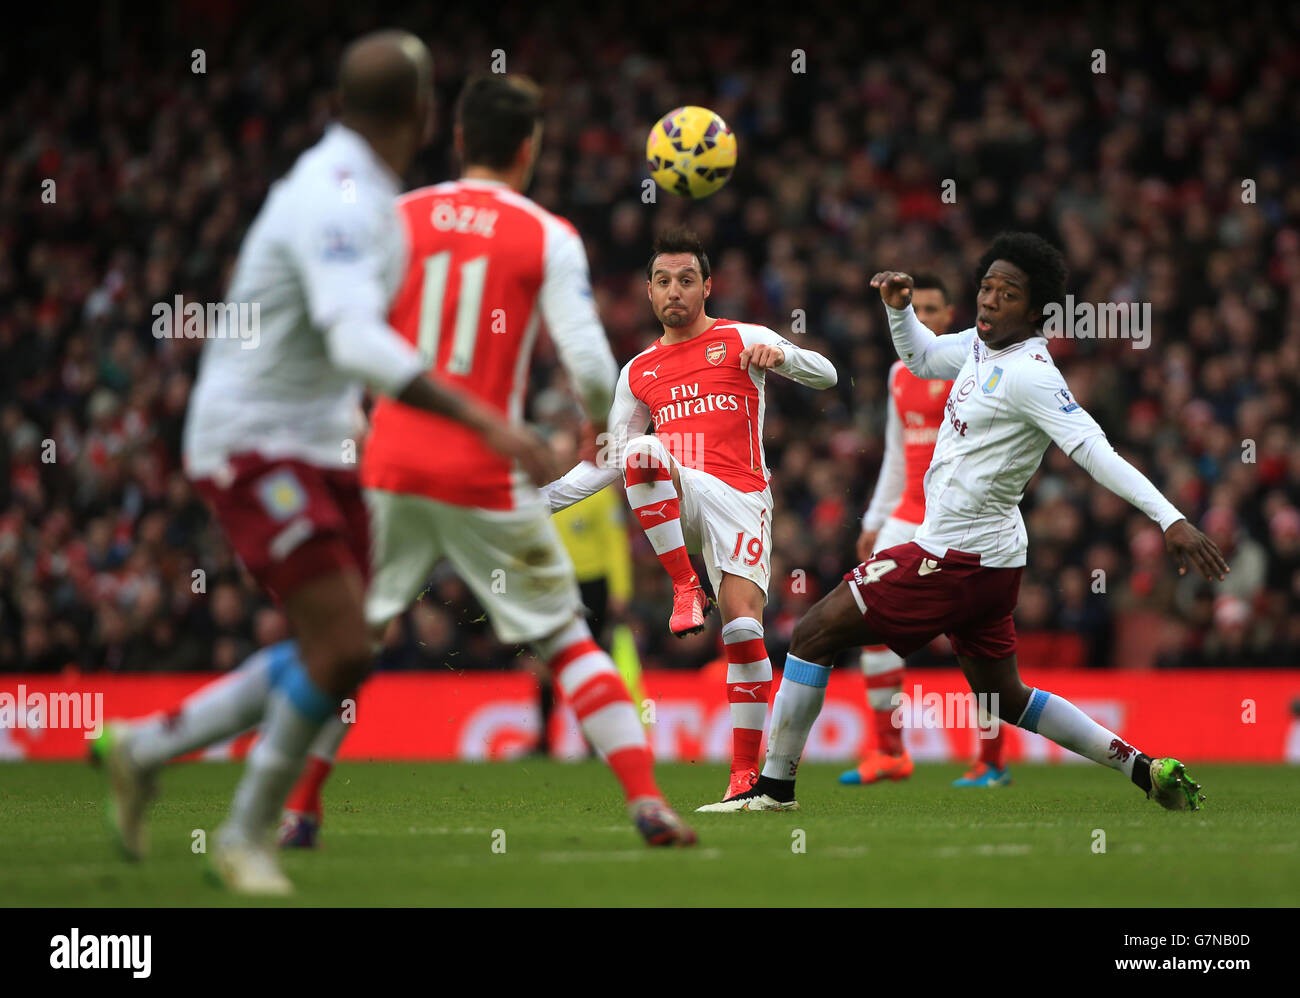 El balón Santi Cazorla del Arsenal durante el partido Barclays Premier League en el Emirates Stadium, Londres. Foto de stock